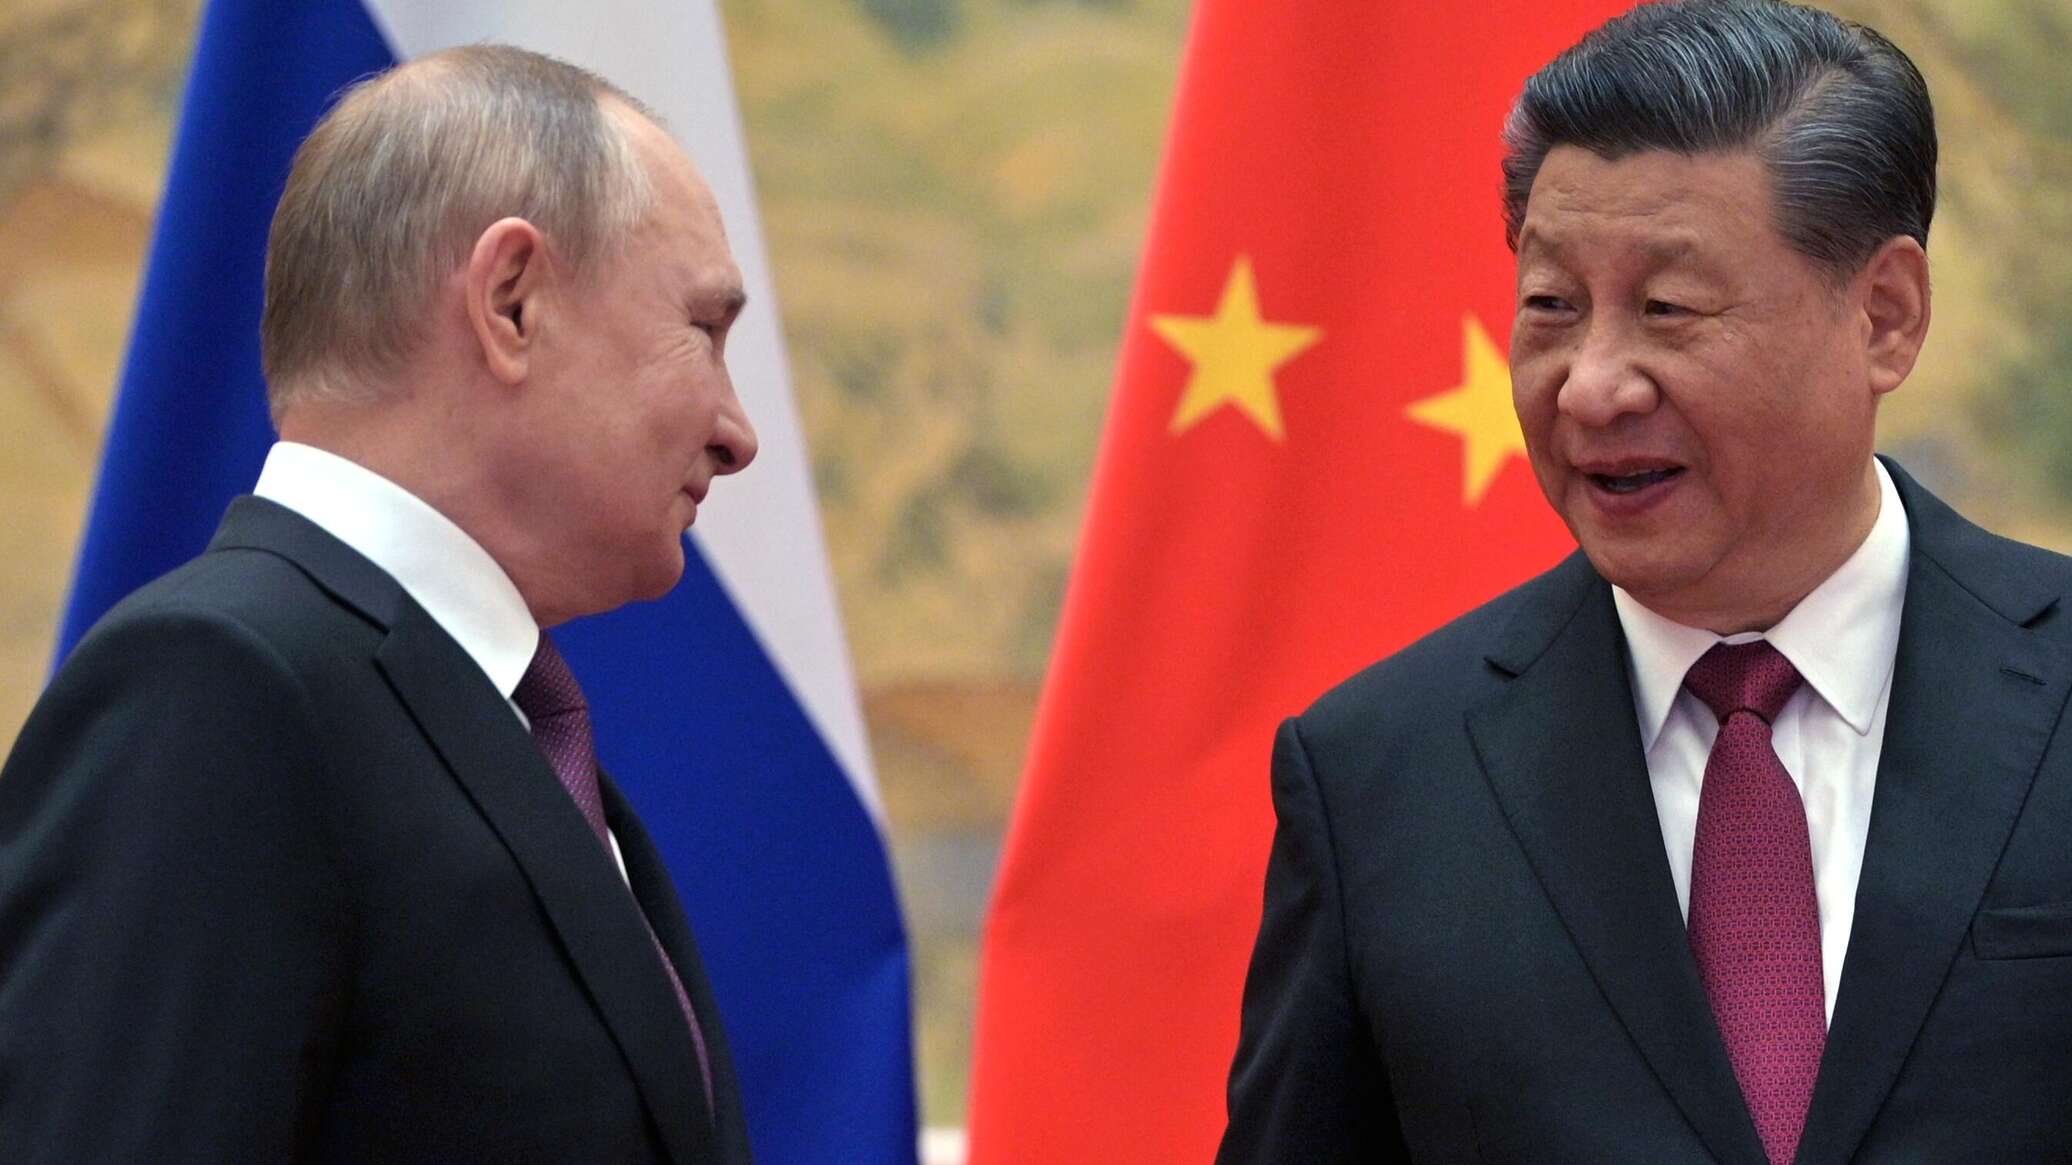 بوتين: العلاقات بين روسيا والصين لم تصل قط إلى هذا المستوى من الانسجام